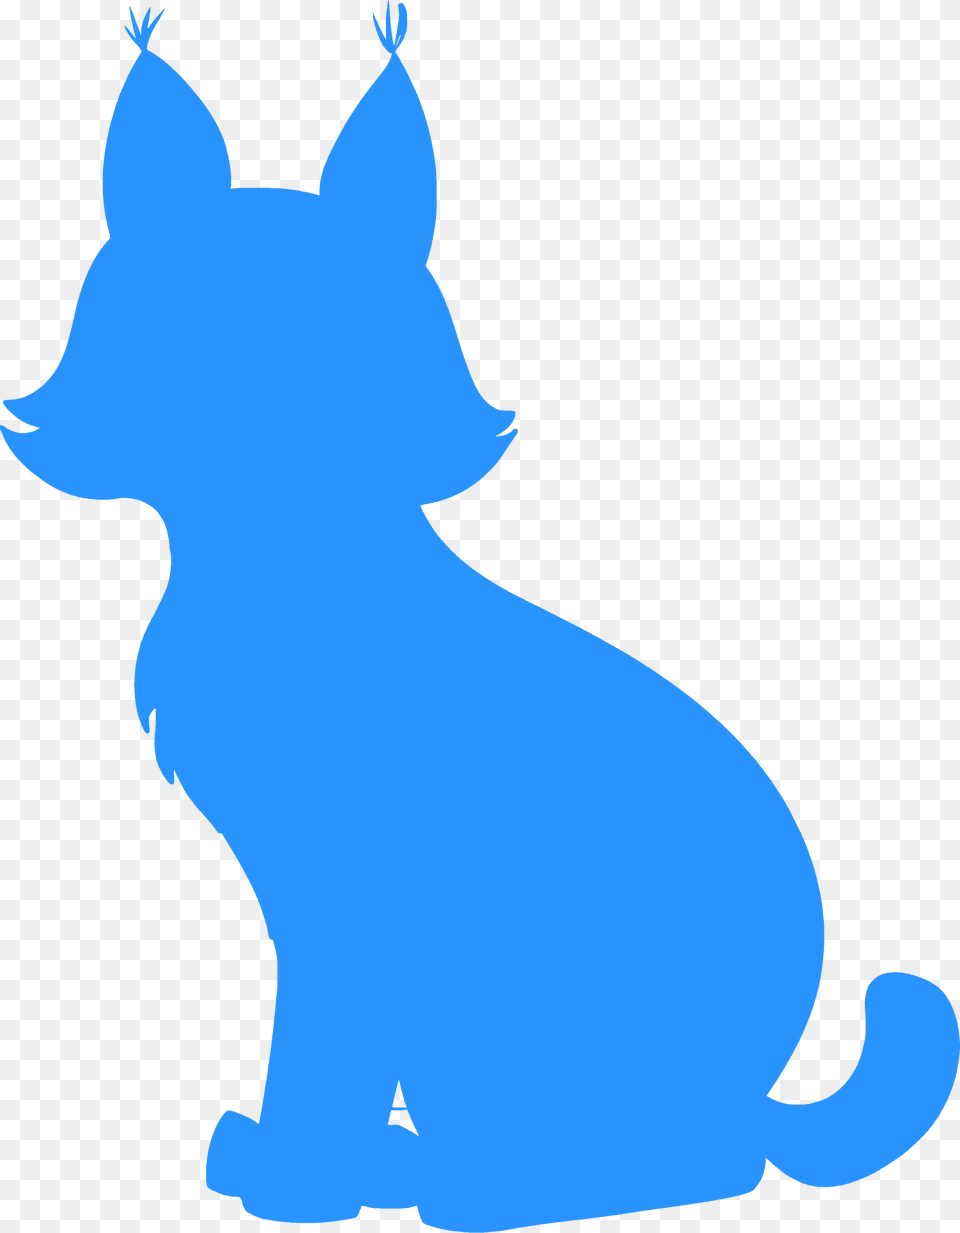 Bobcat Silhouette, Animal, Cat, Mammal, Pet Png Image